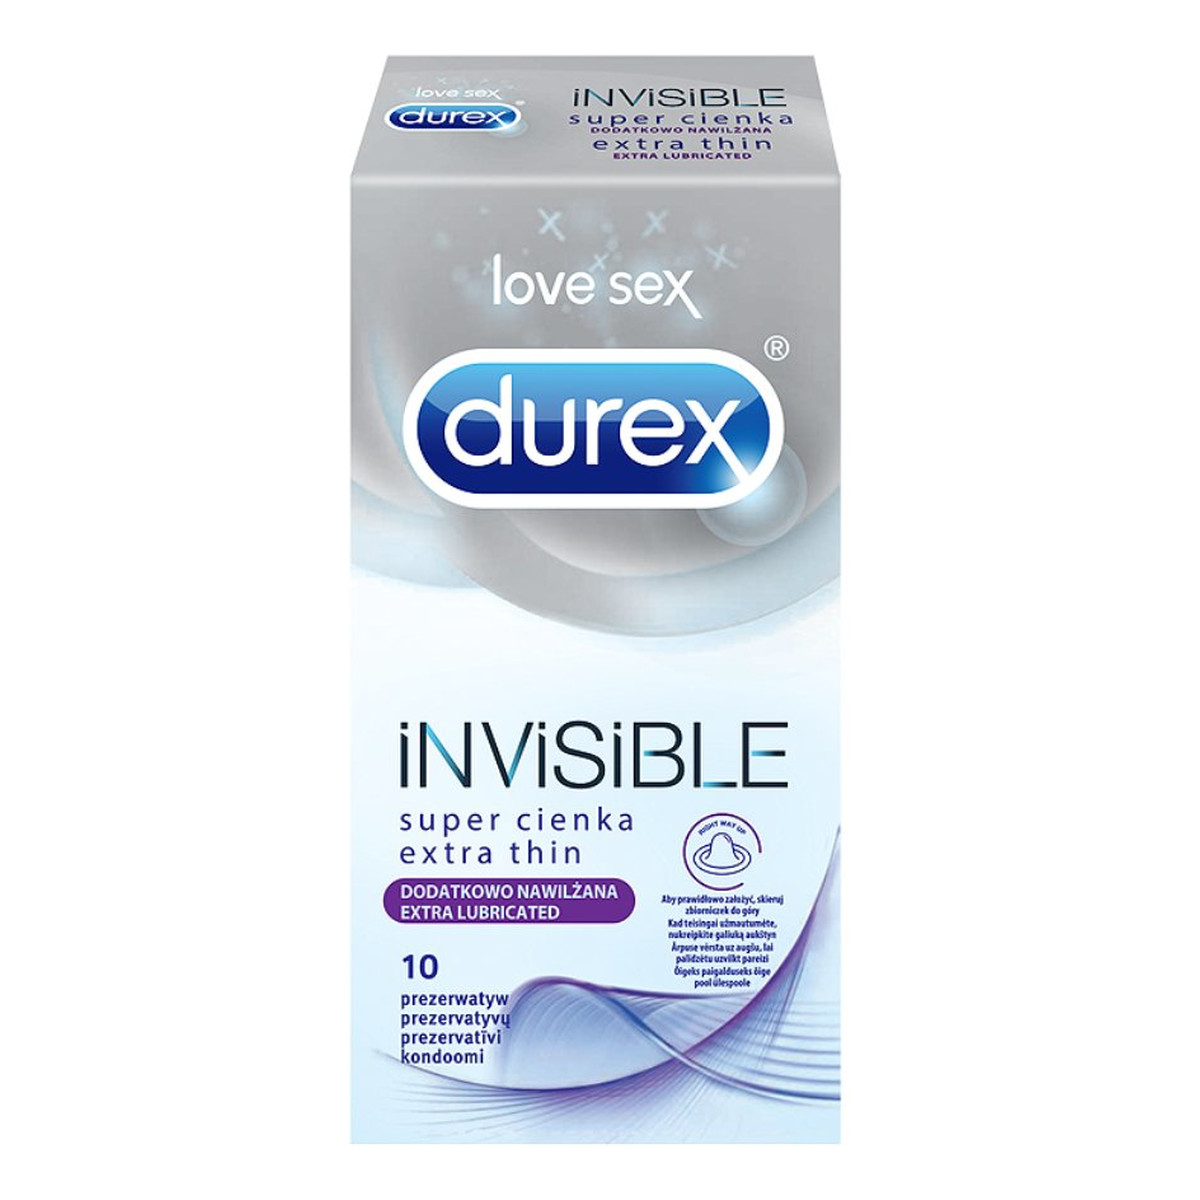 Durex Invisible Dodatkowo nawilżane Prezerwatywy 10 sztuk